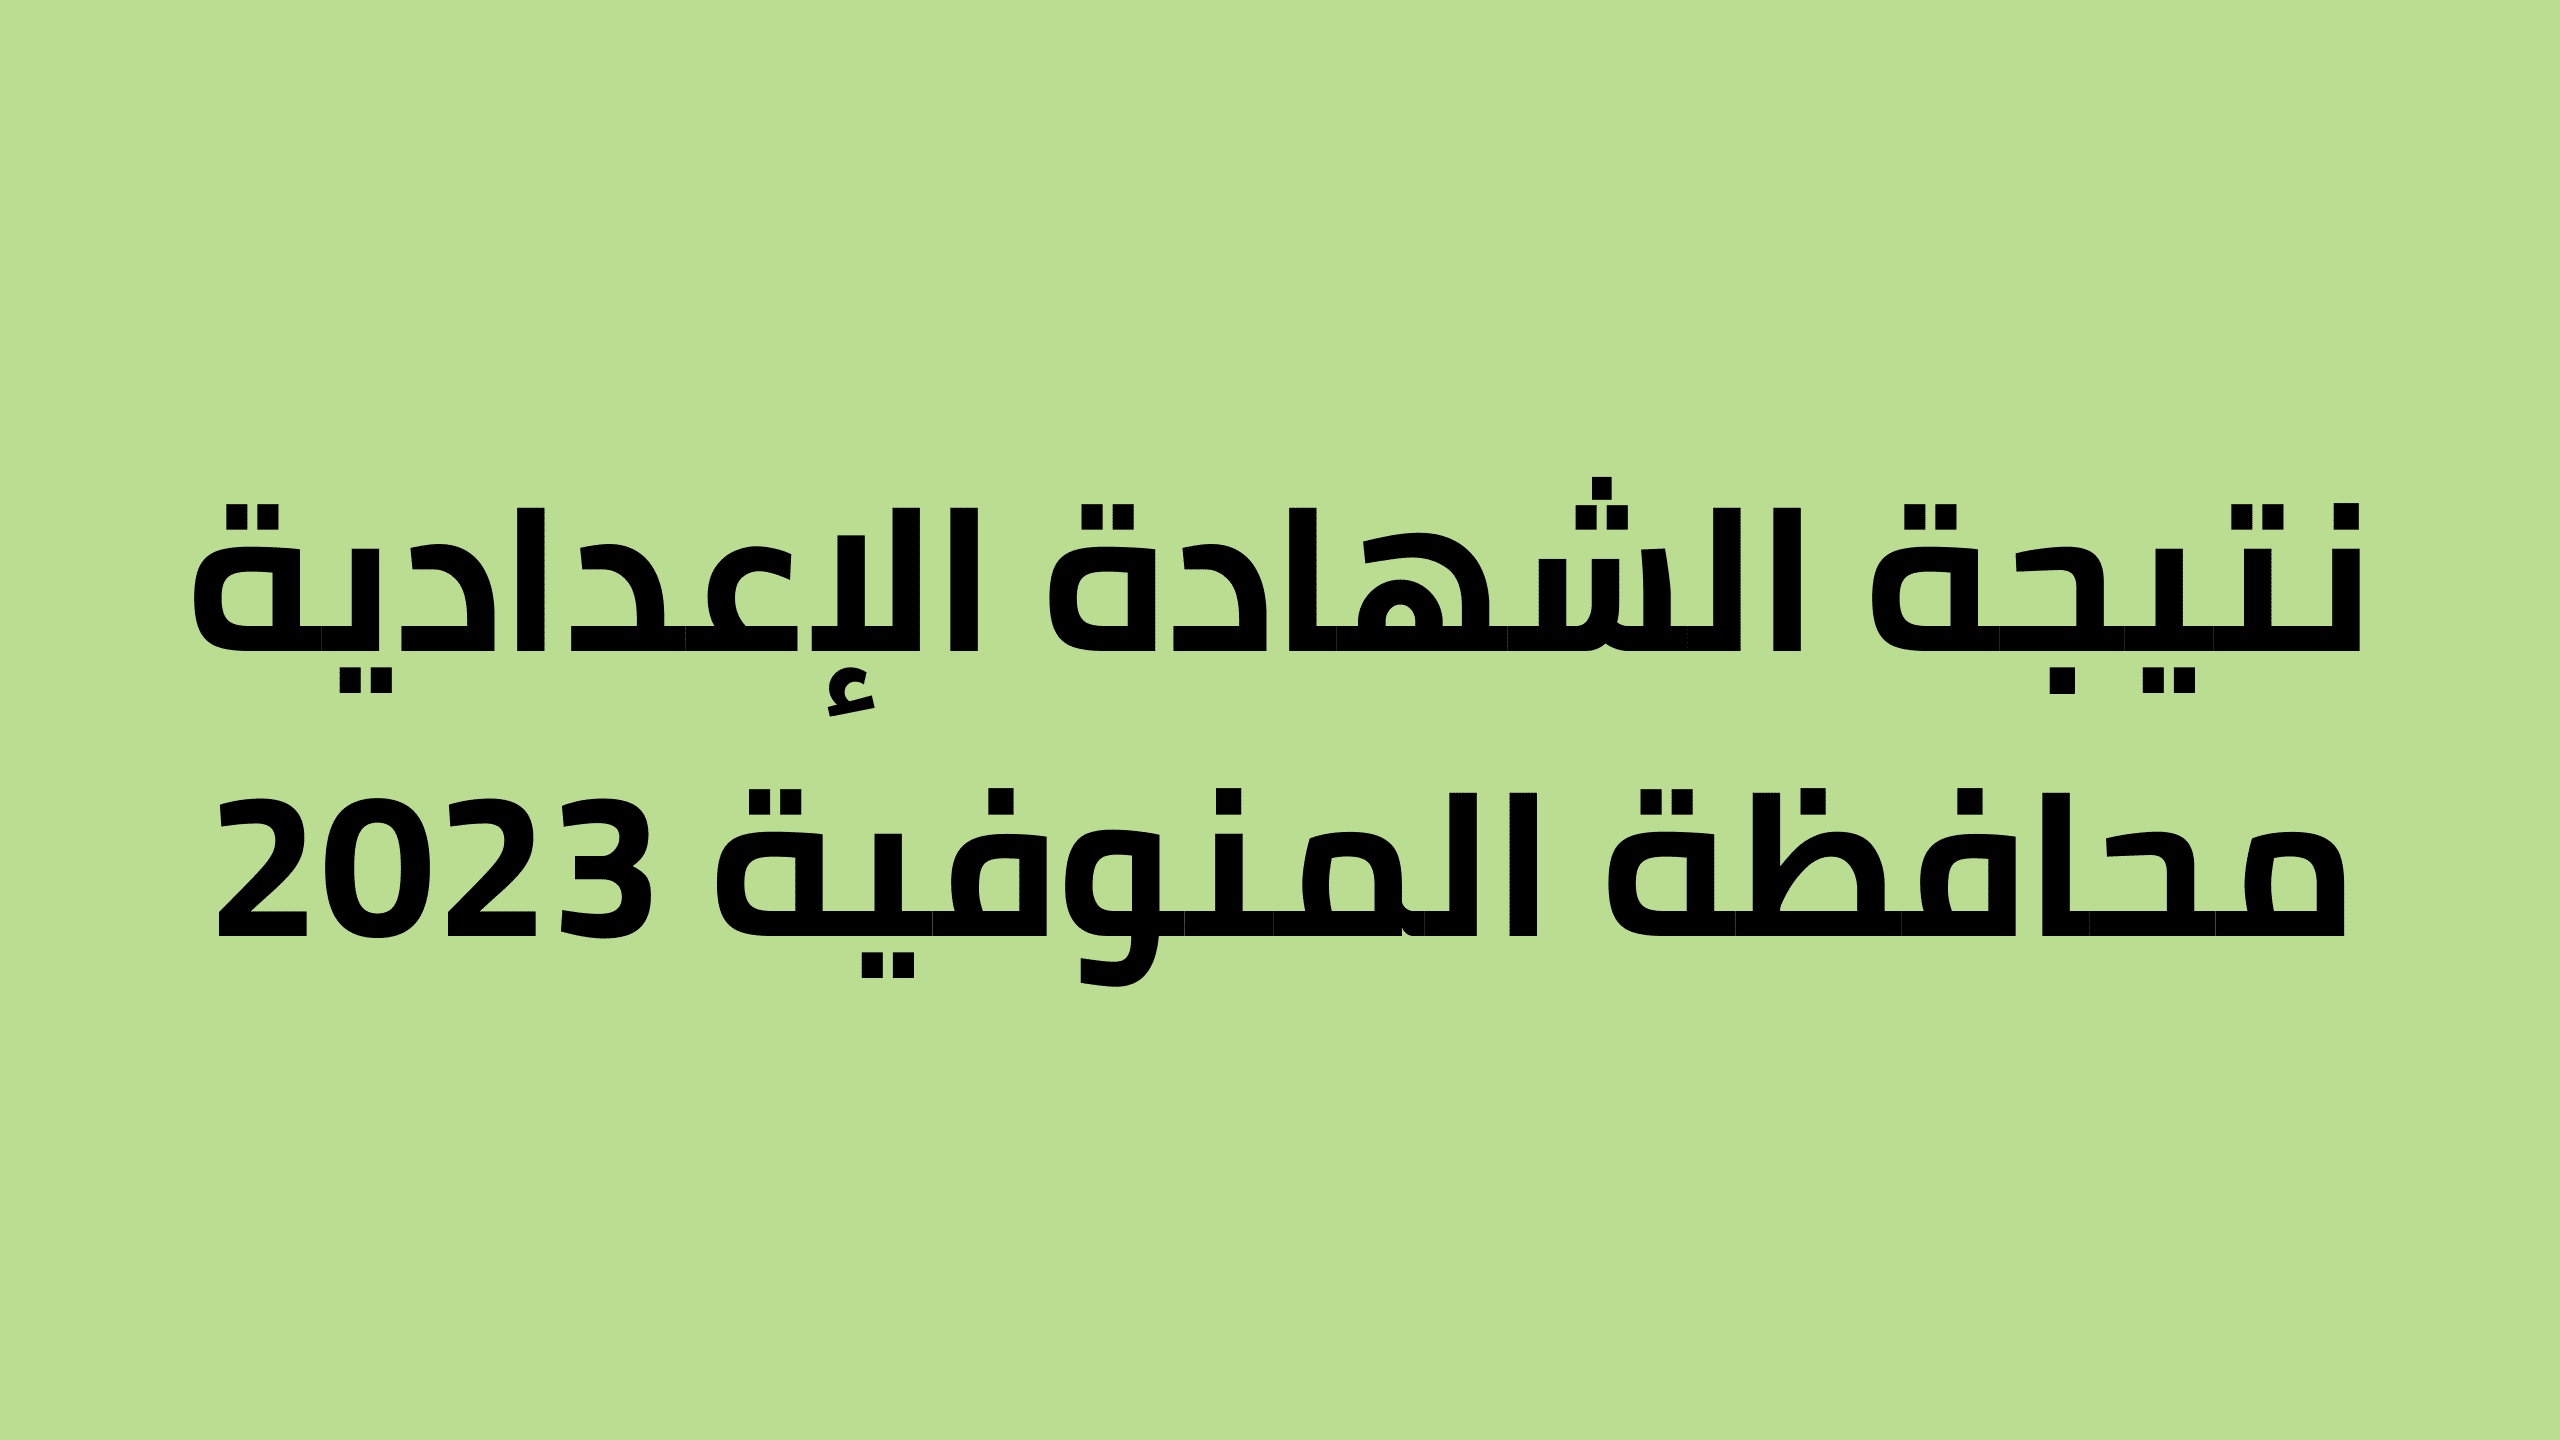 نتيجة الشهادة الاعدادية محافظة المنوفية 2023 بالاسم ورقم الجلوس